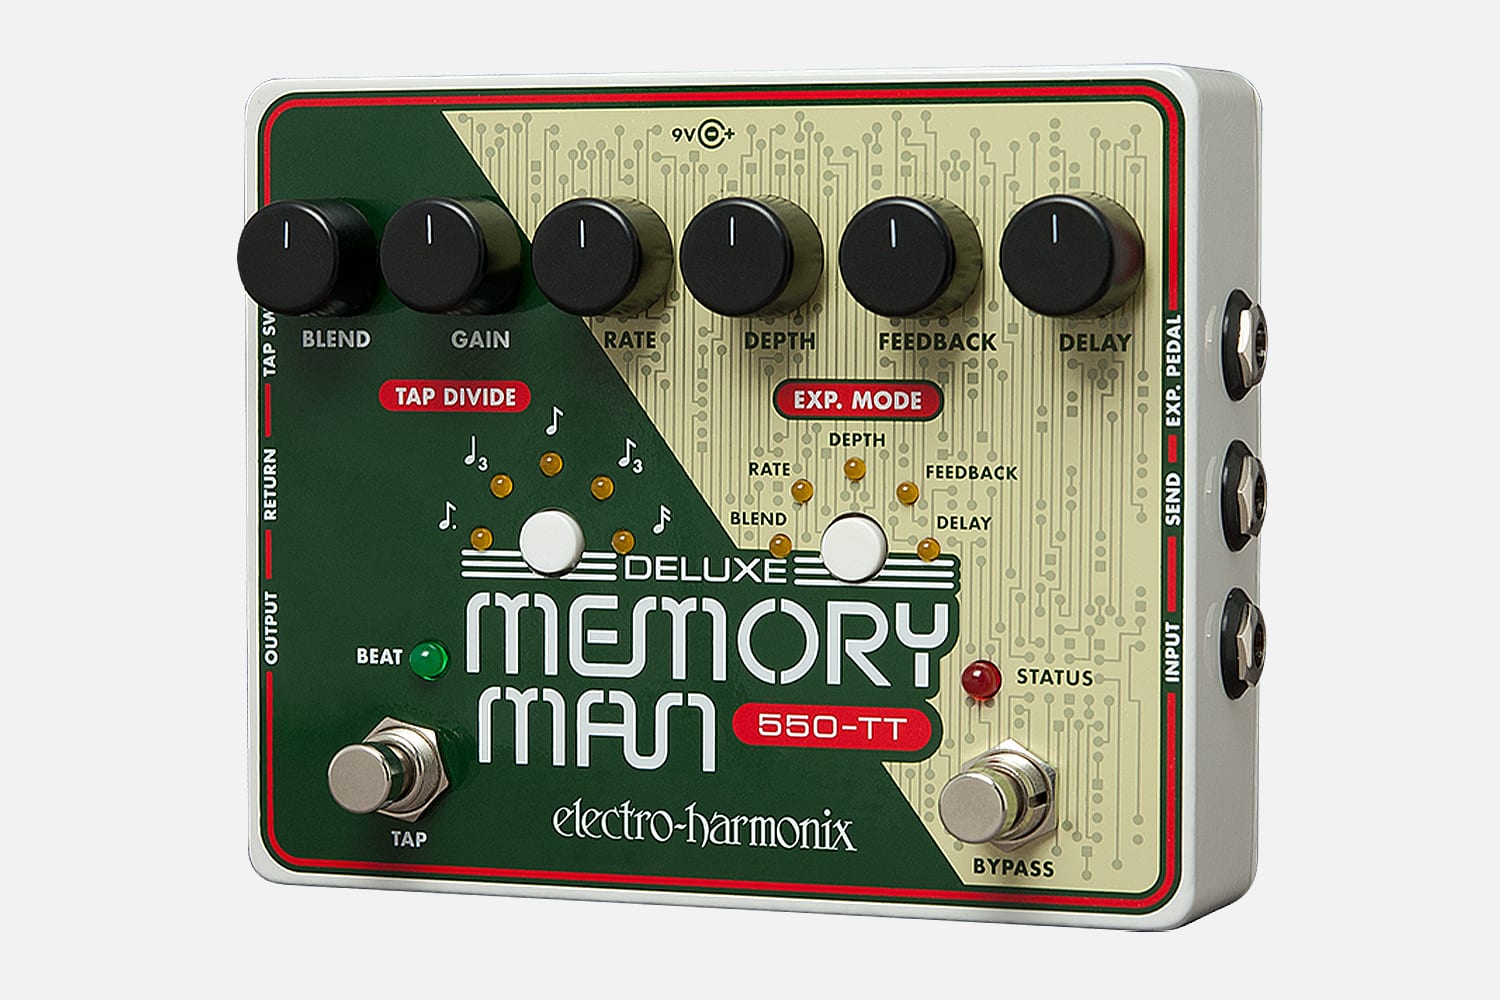 Deluxe Memory Man 550-TT